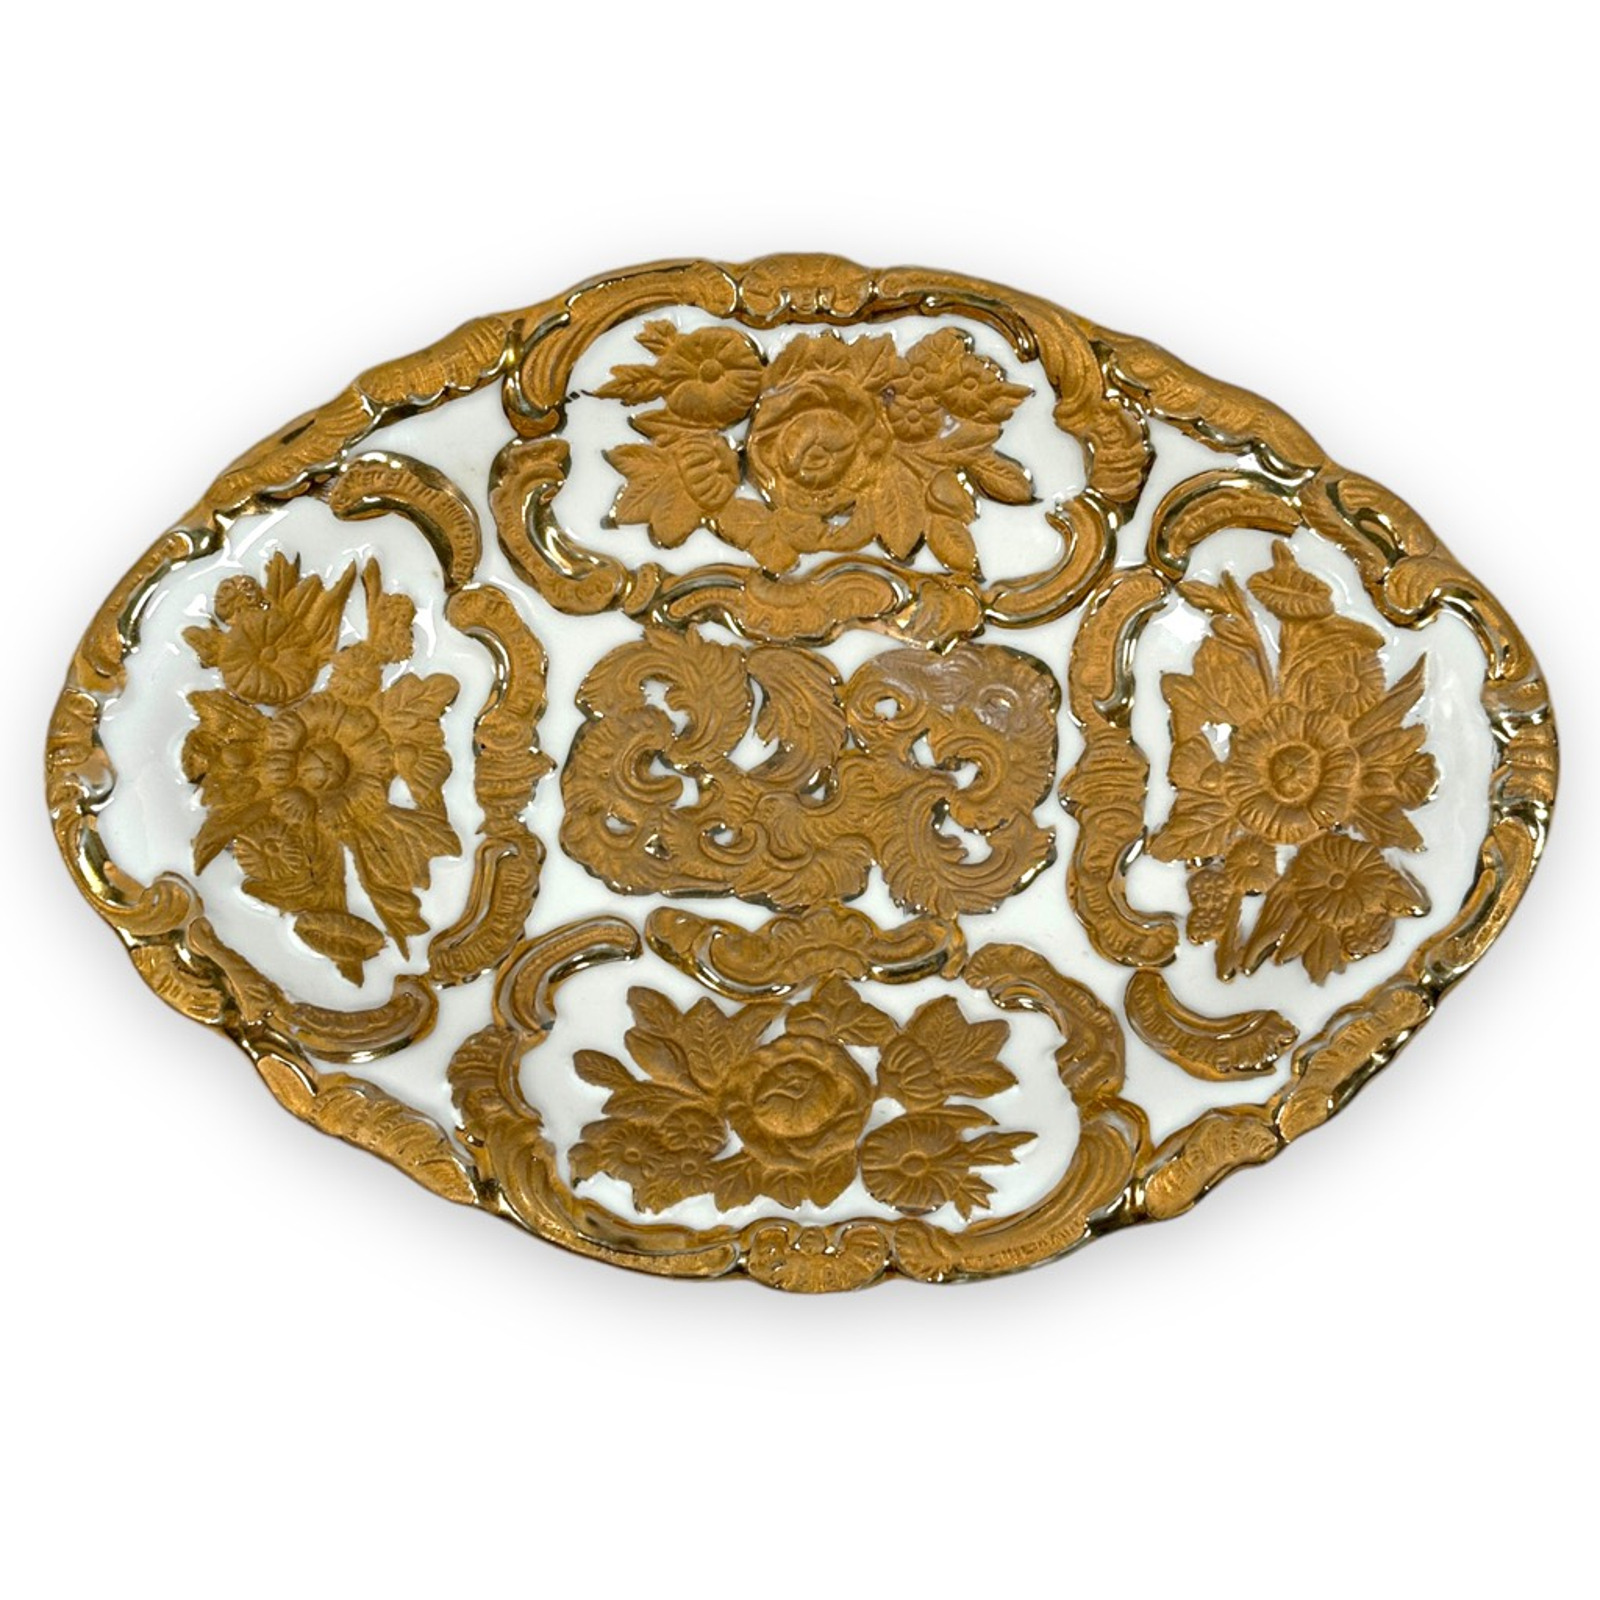 Antique Charles Sadek Porcelain Dish Bowl Floral Baroque Gold Vintage Germany